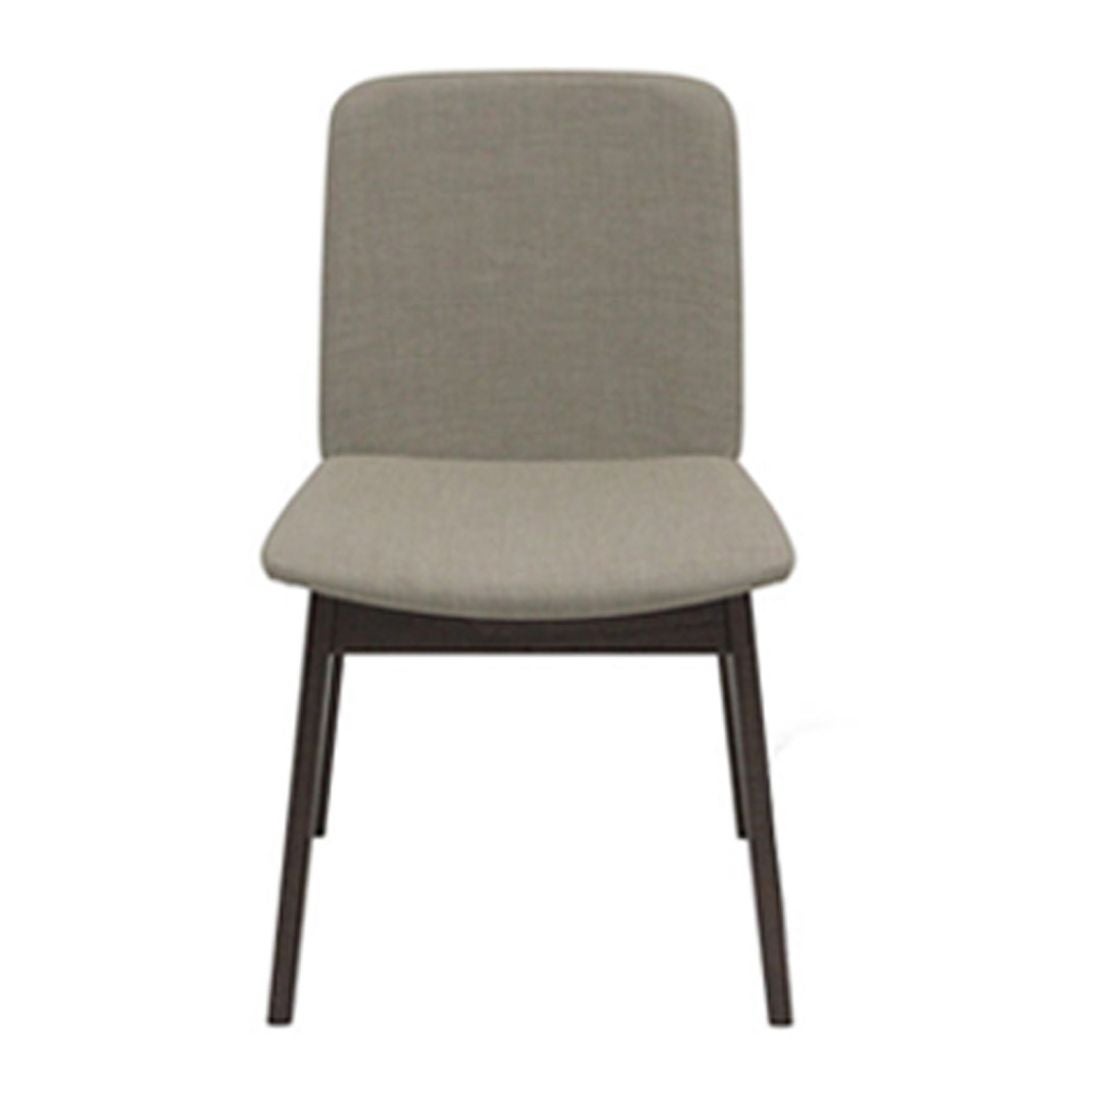 เก้าอี้ทานอาหาร เก้าอี้ไม้เบาะผ้า รุ่น Ethan สีสีลายไม้ธรรมชาติ-SB Design Square